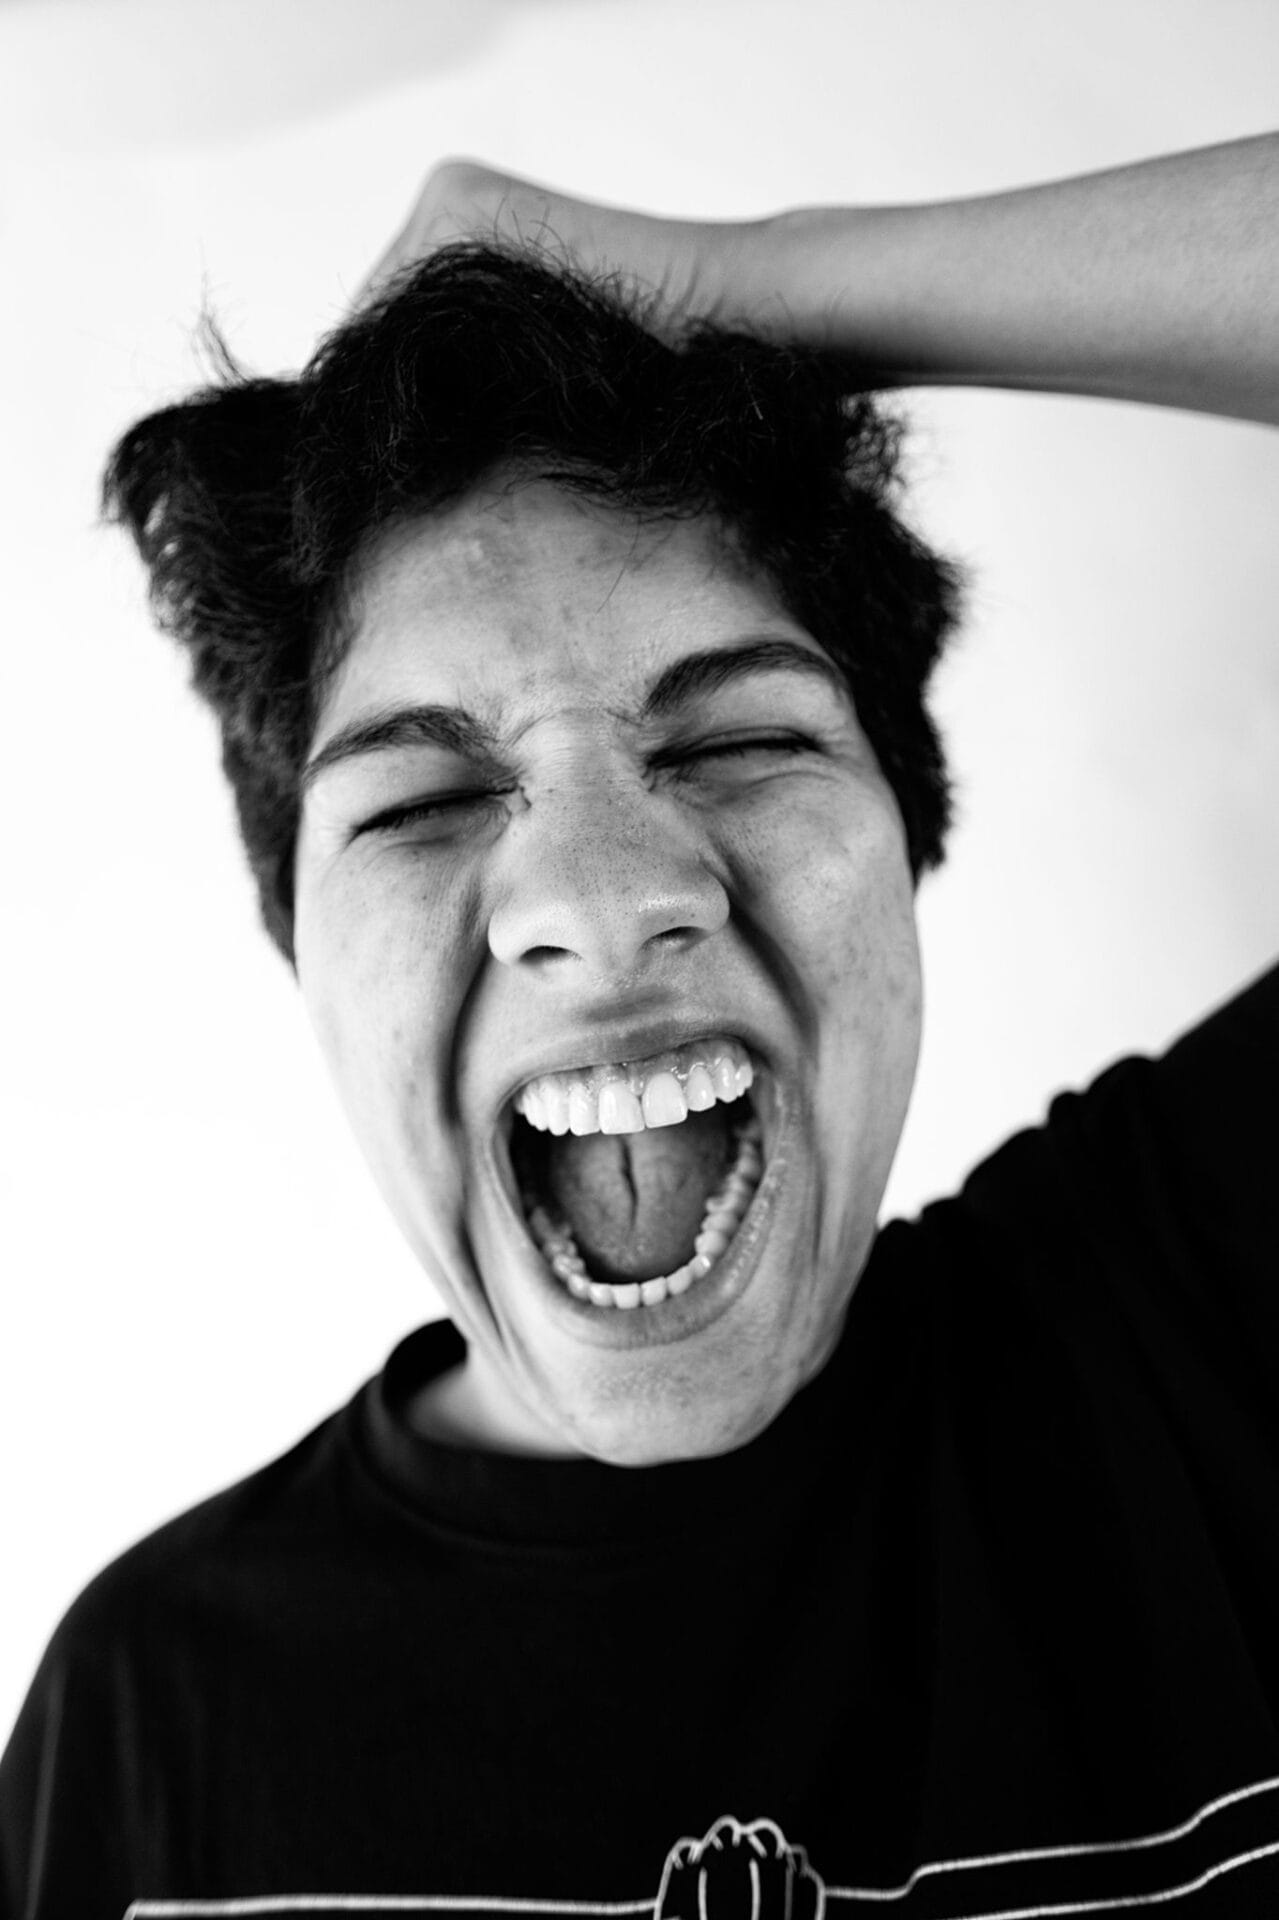 Schwarz-Weiß Portrait einer ausdrucksstraken jungen Person